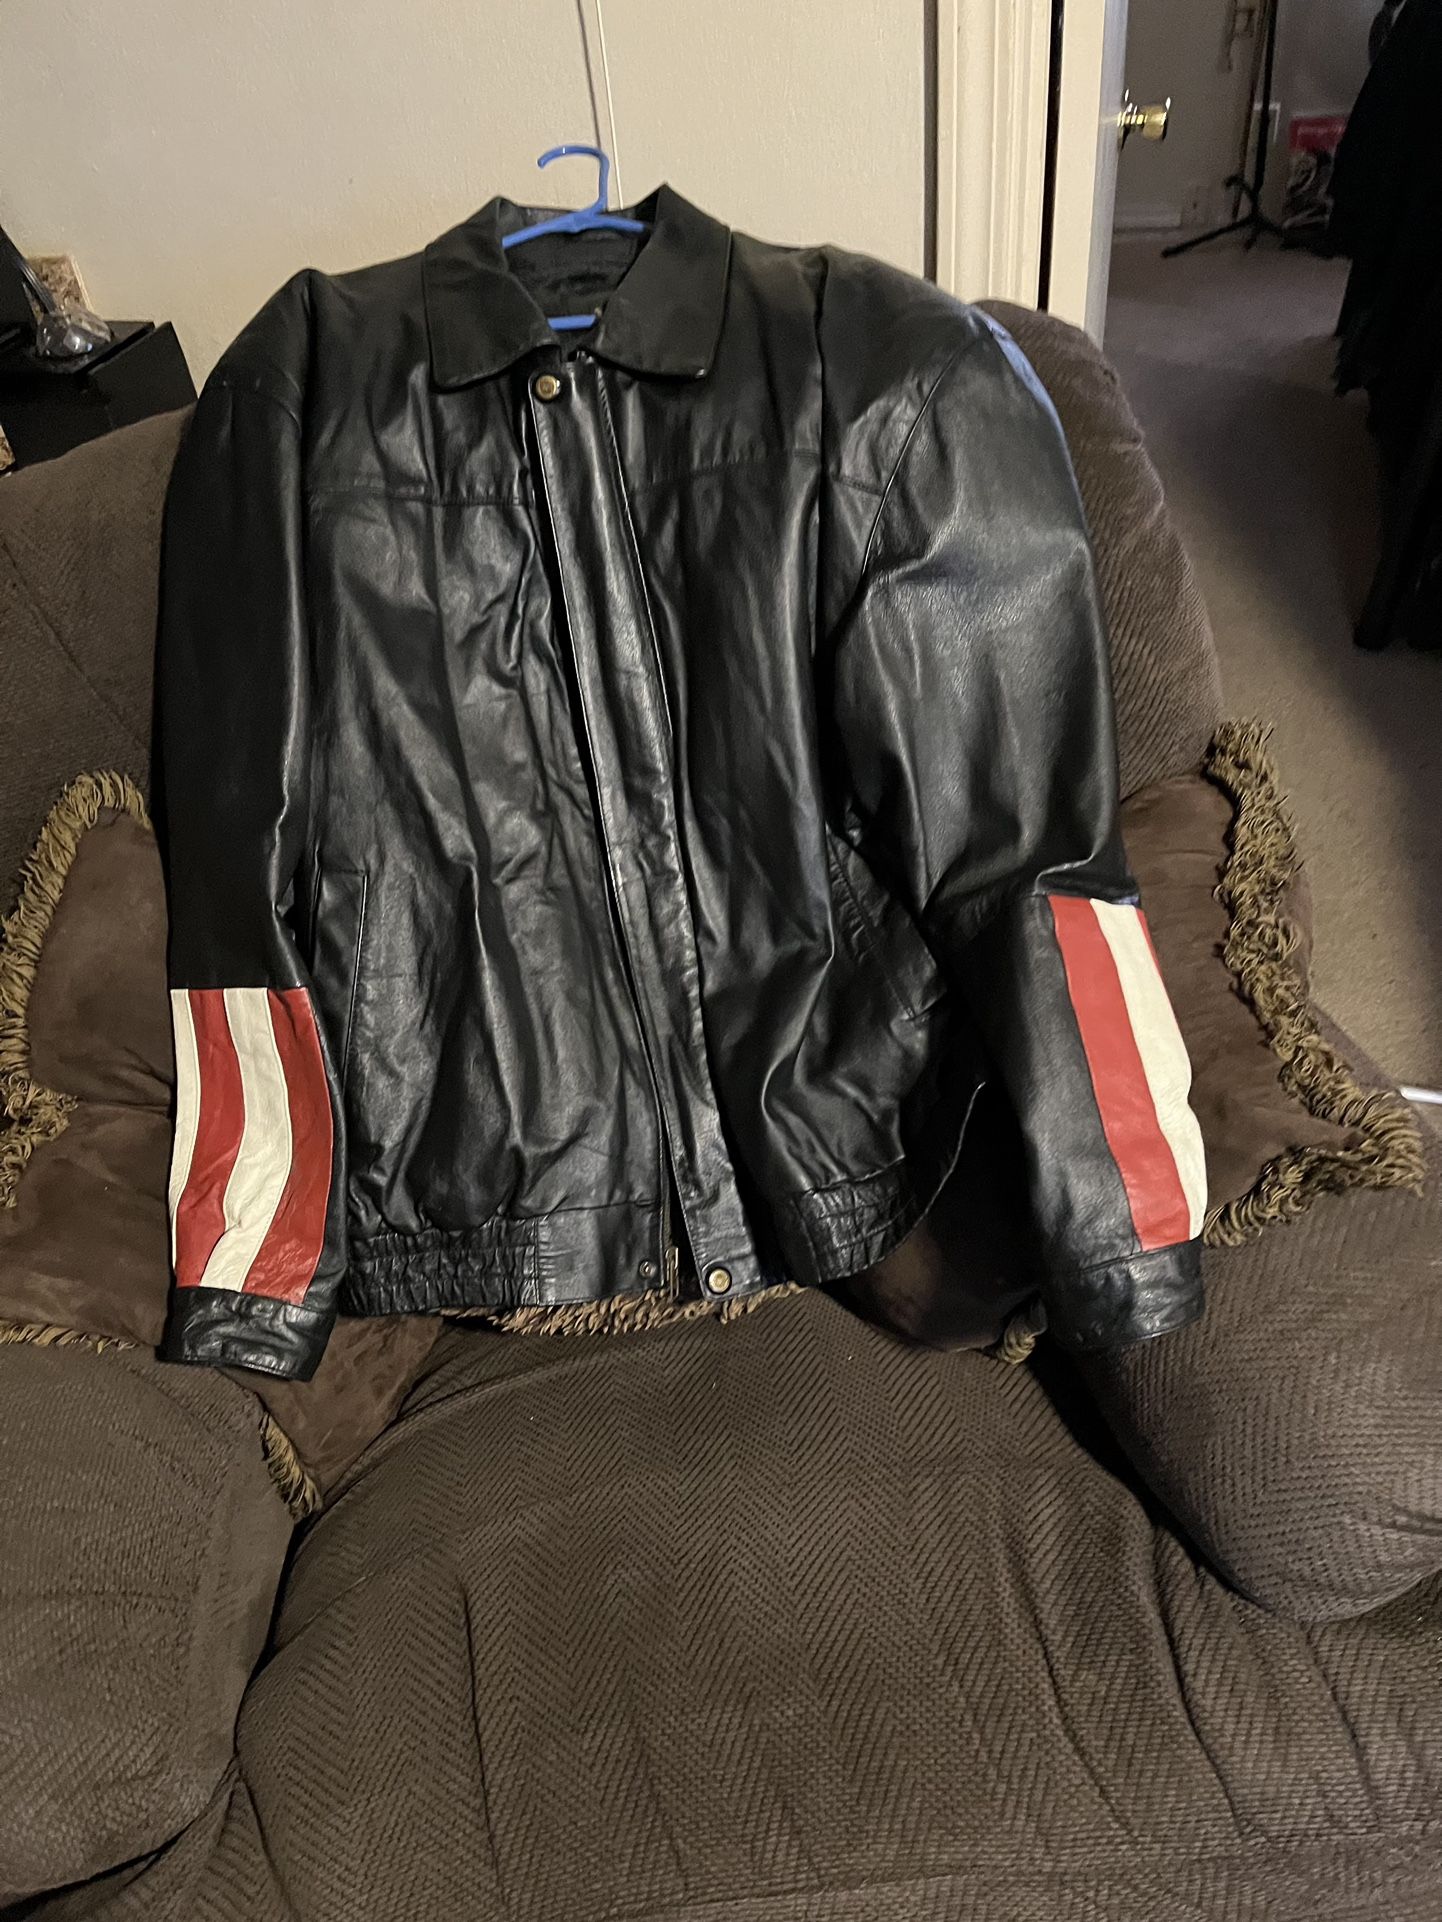 Black Harley Davidson Jacket (leather)